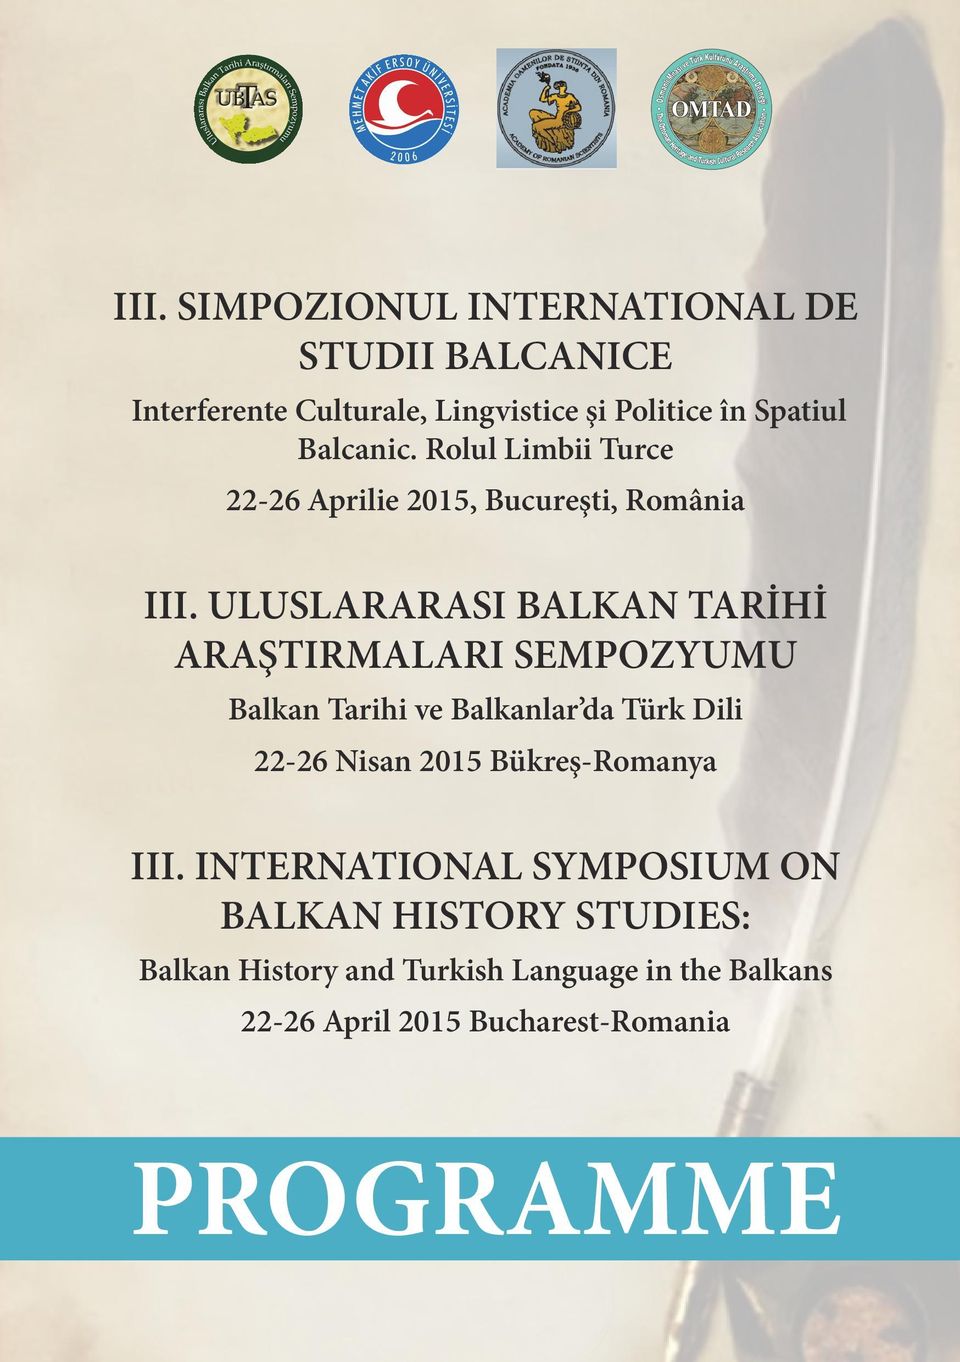 Rolul Li Interferente 22-26 Aprilie Culturale, 2015, Lingvistice Bucureşti, şi Politice România în Spatiul Balcanic.